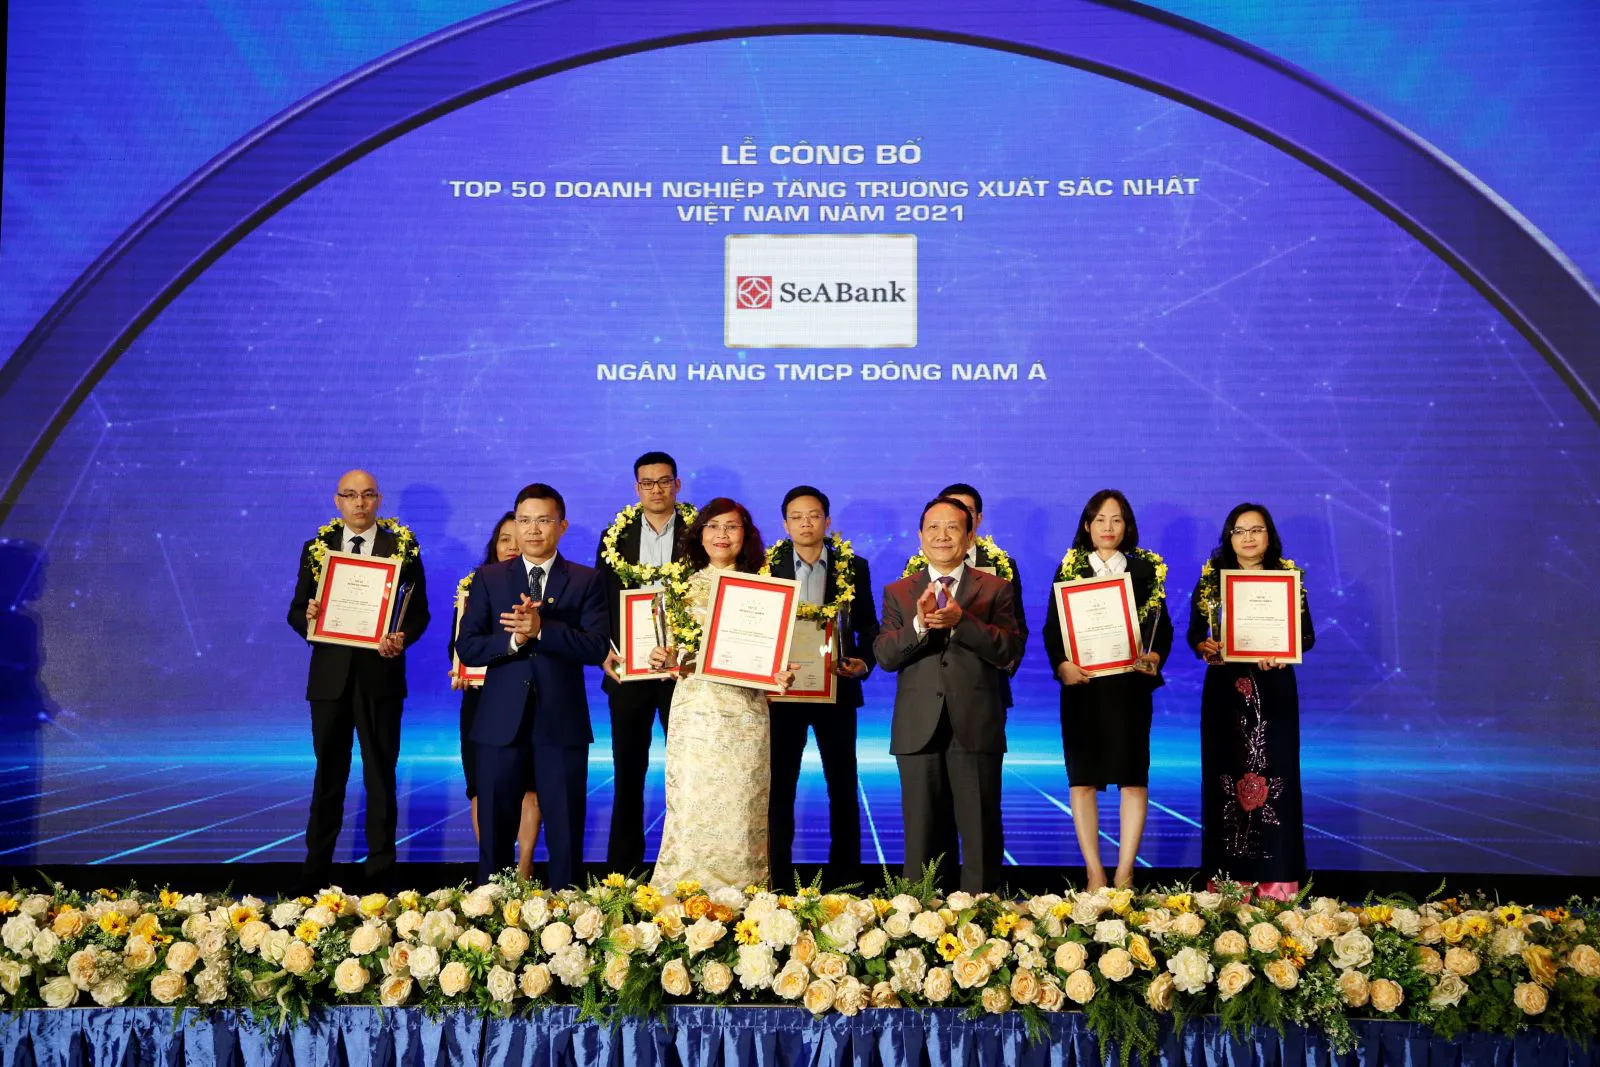  Ngân hàng TMCP Đông Nam Á (SeABank) vinh dự được xếp hạng 193/500 doanh nghiệp tăng trưởng nhanh nhất Việt Nam năm 2021